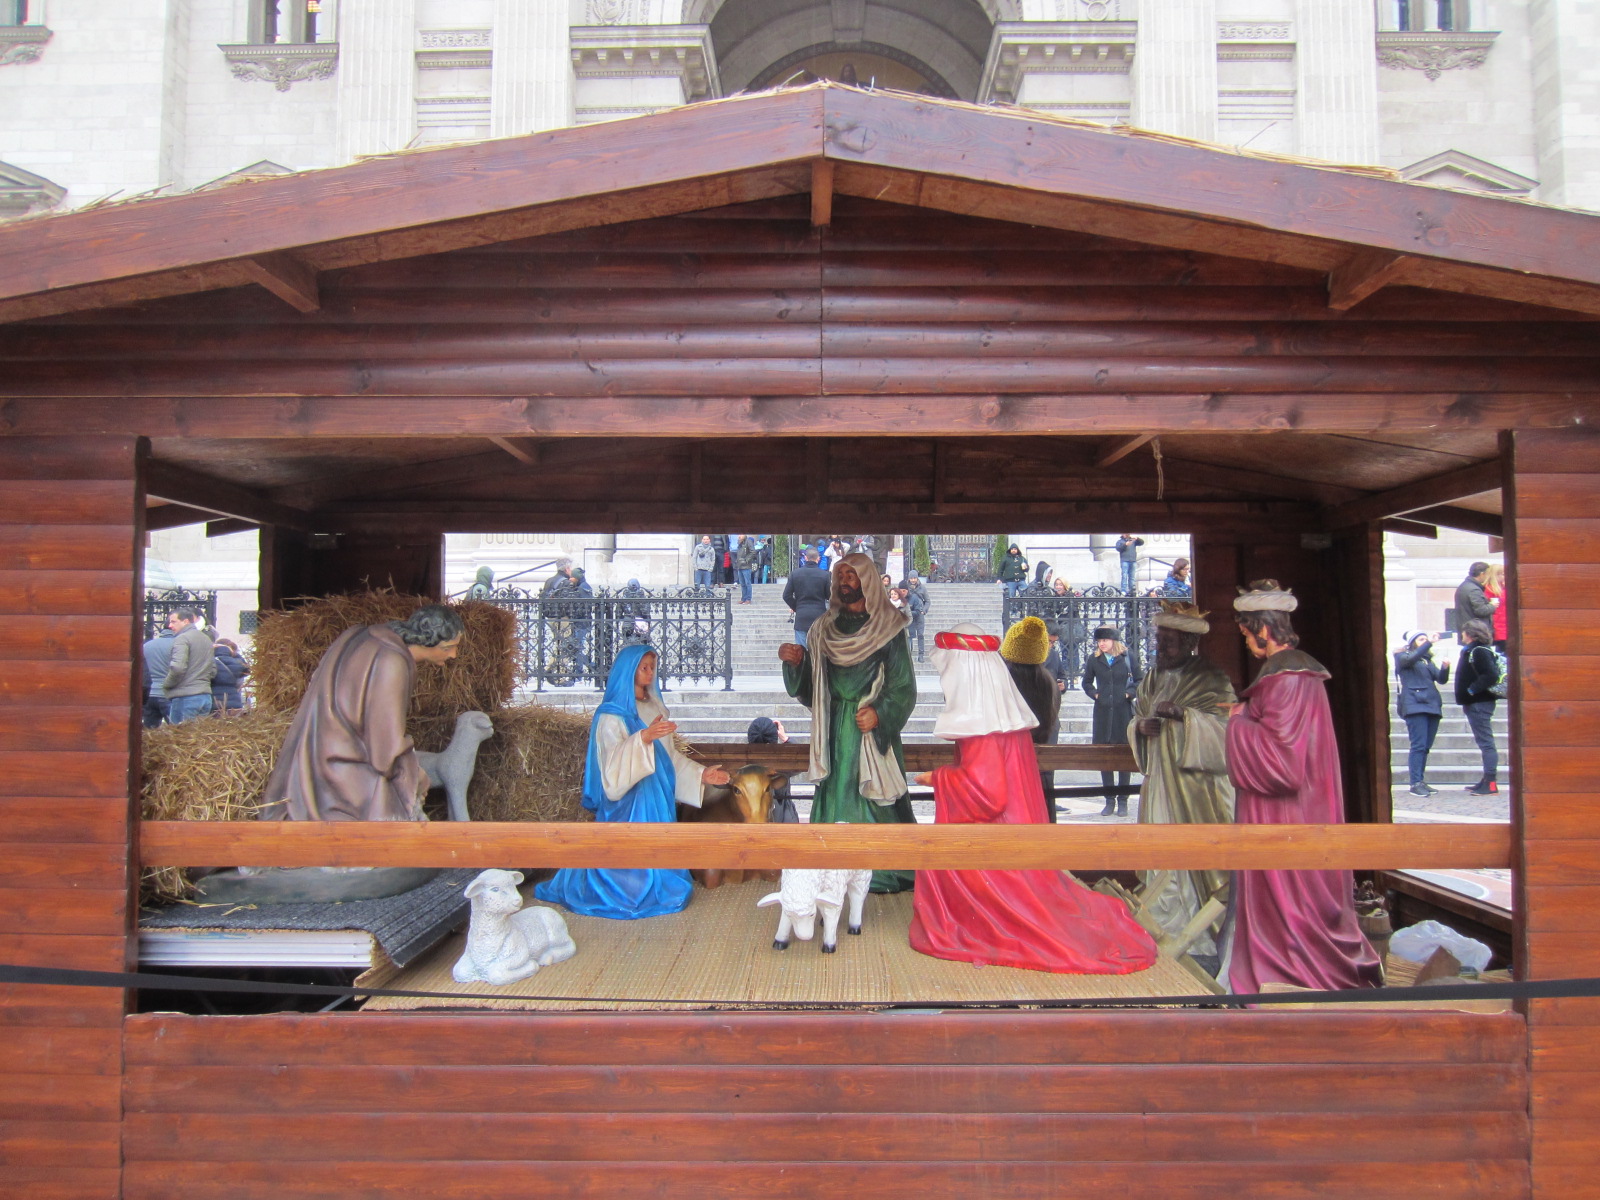 イエス生誕の場面を描くハンガリー伝統の「ベツレヘム遊び」の大型版です。